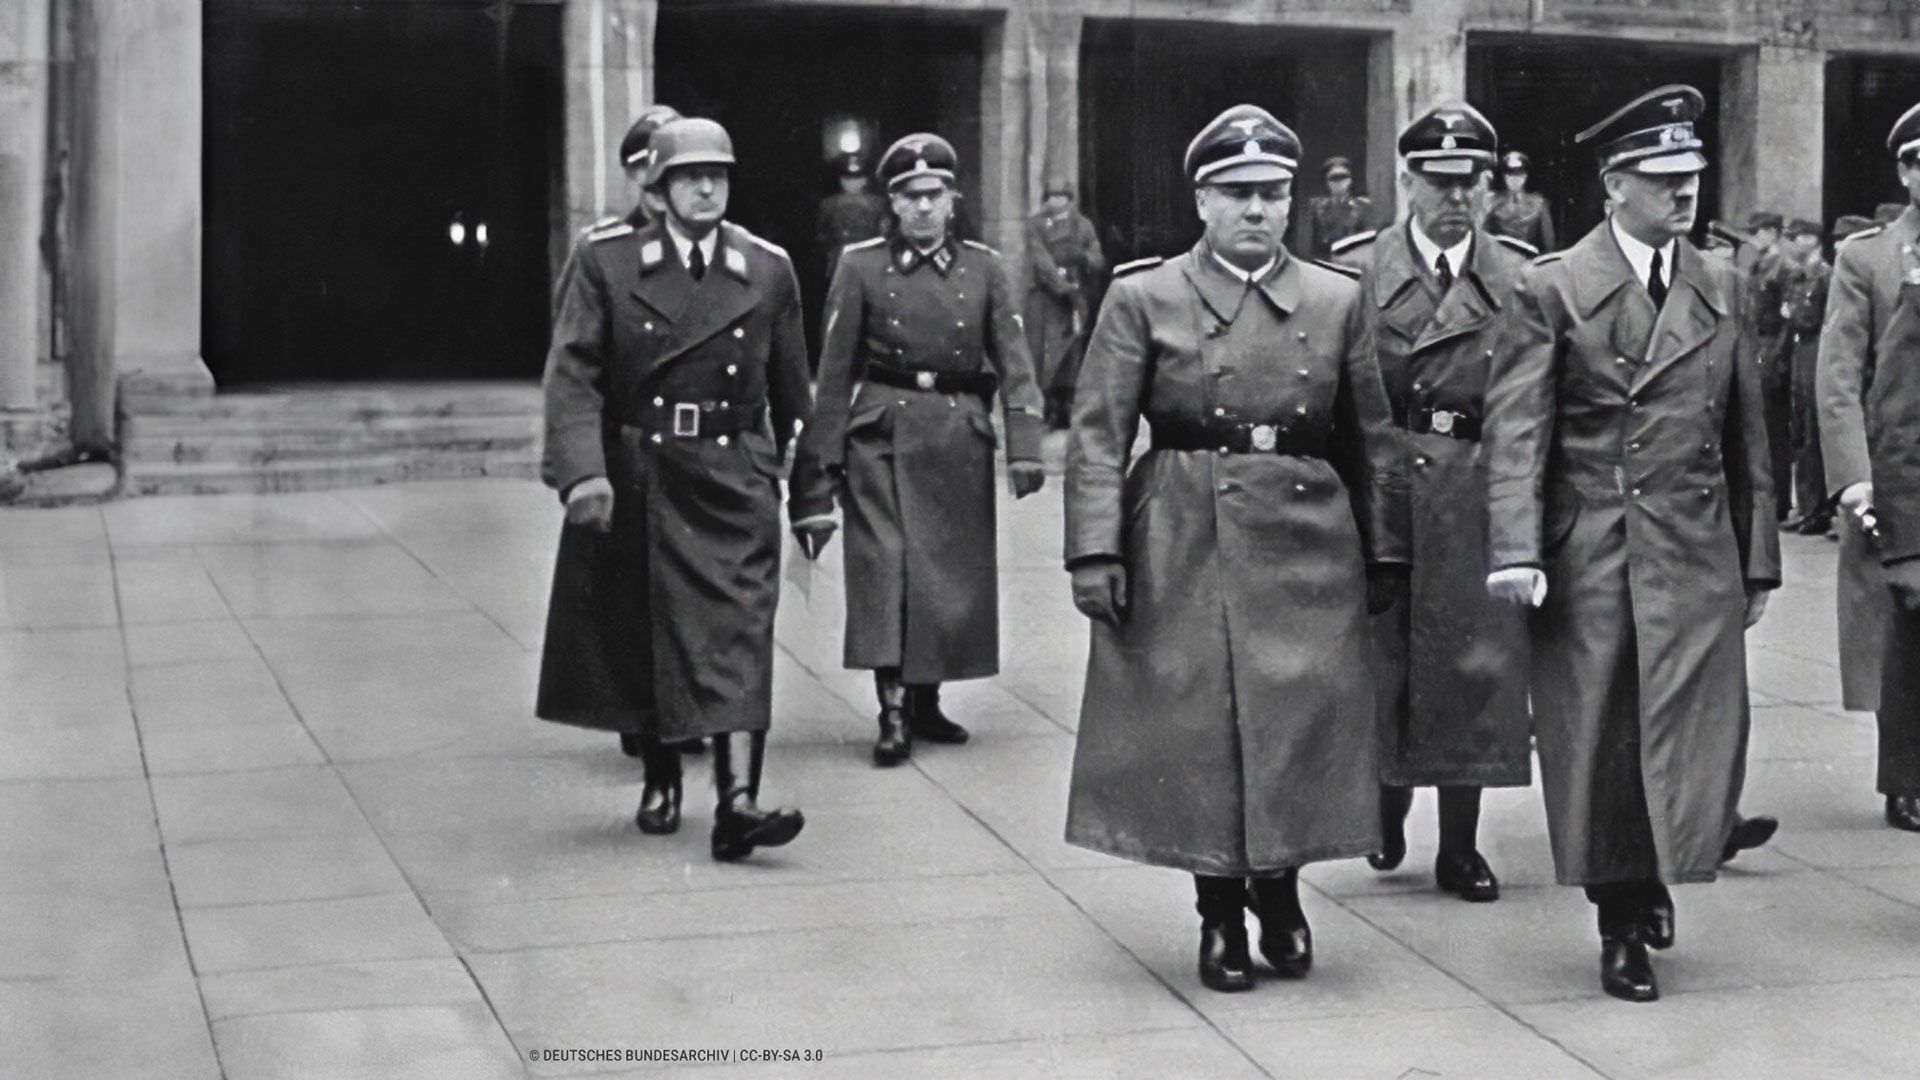 Der 2. Weltkrieg – Hitlers neues Deutschland